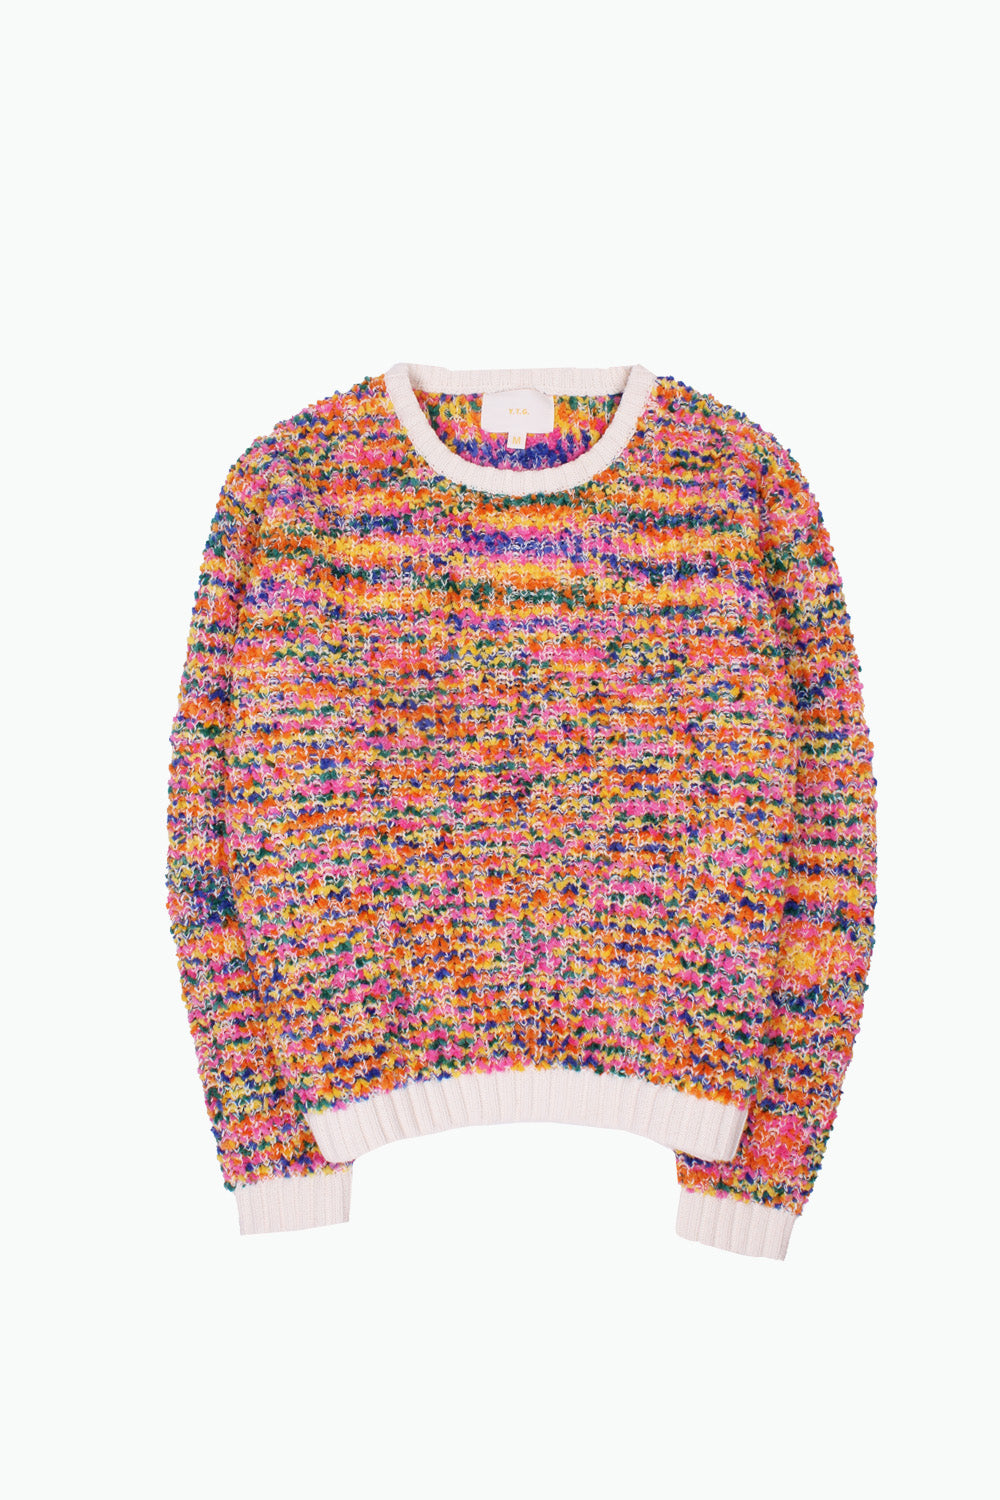 Confetti Sweater